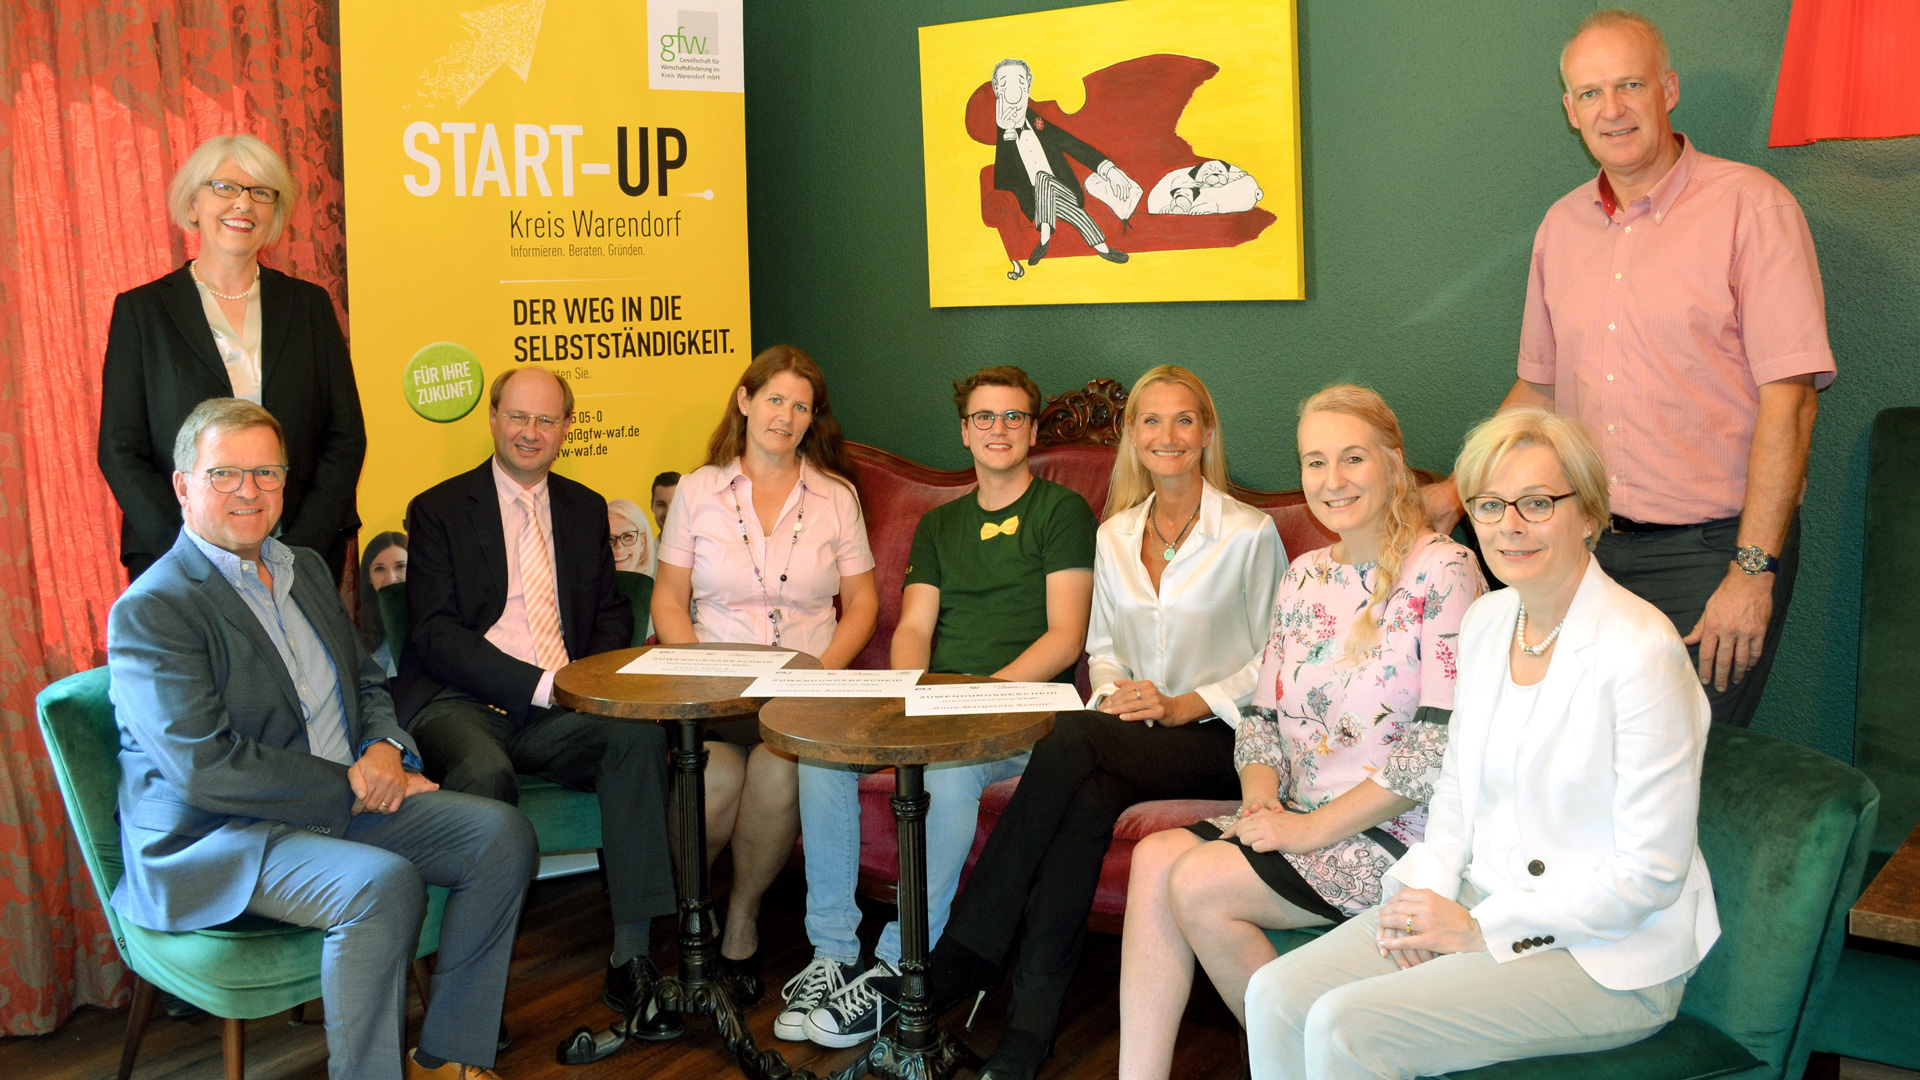 Gründerstipendium Kreis-Warendorf: kommunikativ ist Coach für das Start-Up Unternehmen lemontree